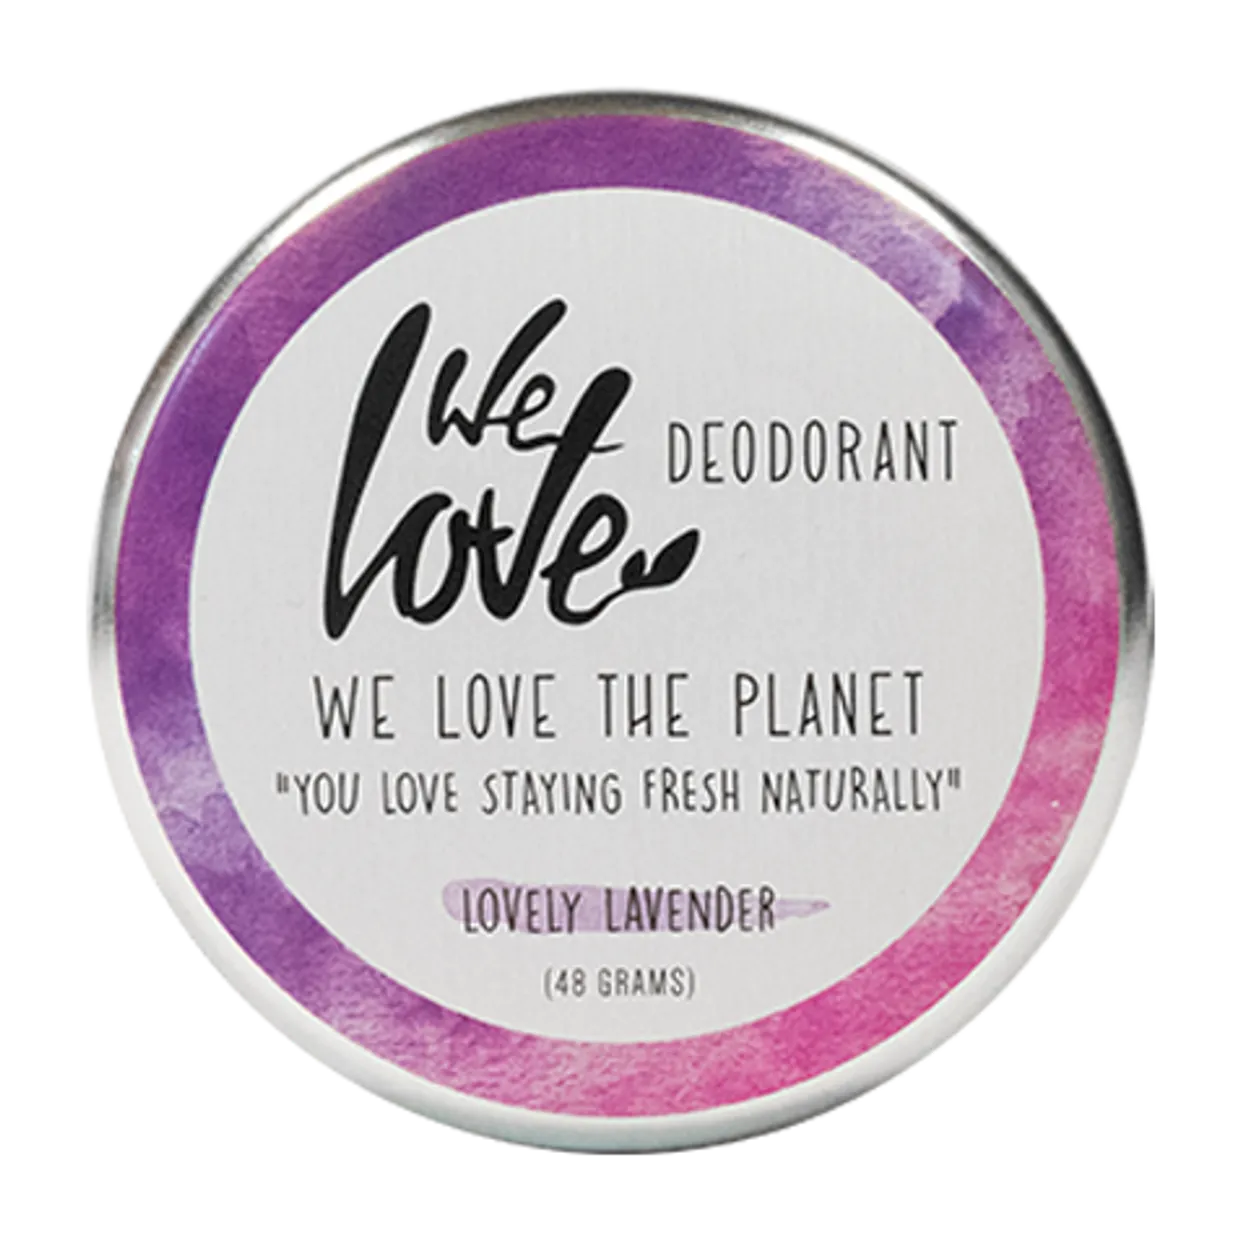 we love deodorant, lovley lavender